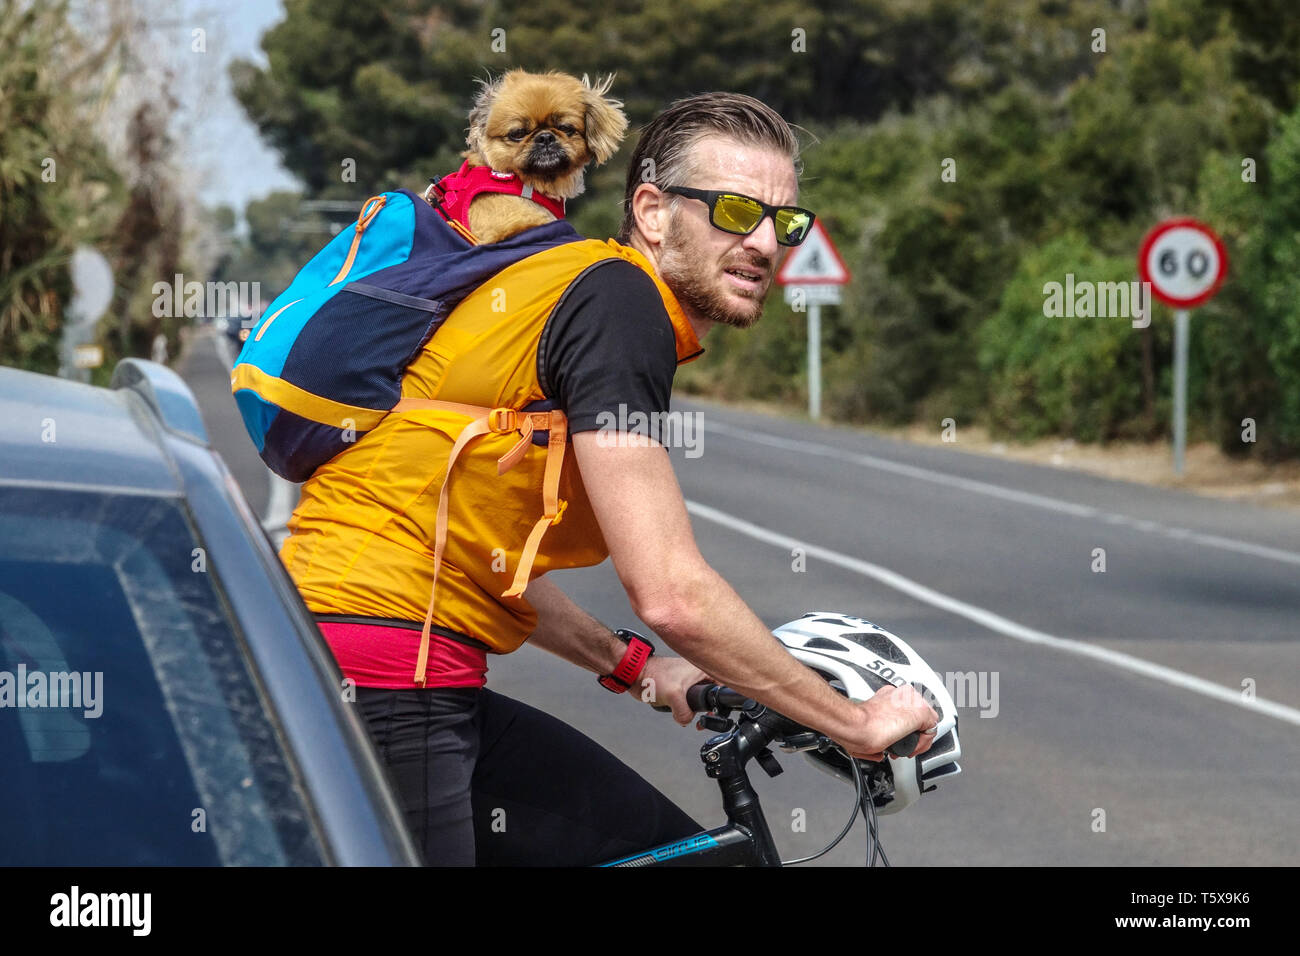 Uomo spagnolo che pedala con un cane nello zaino Spagna bicicletta uomo e cane in borsa in sella bicicletta senza casco equitazione in bicicletta Foto Stock